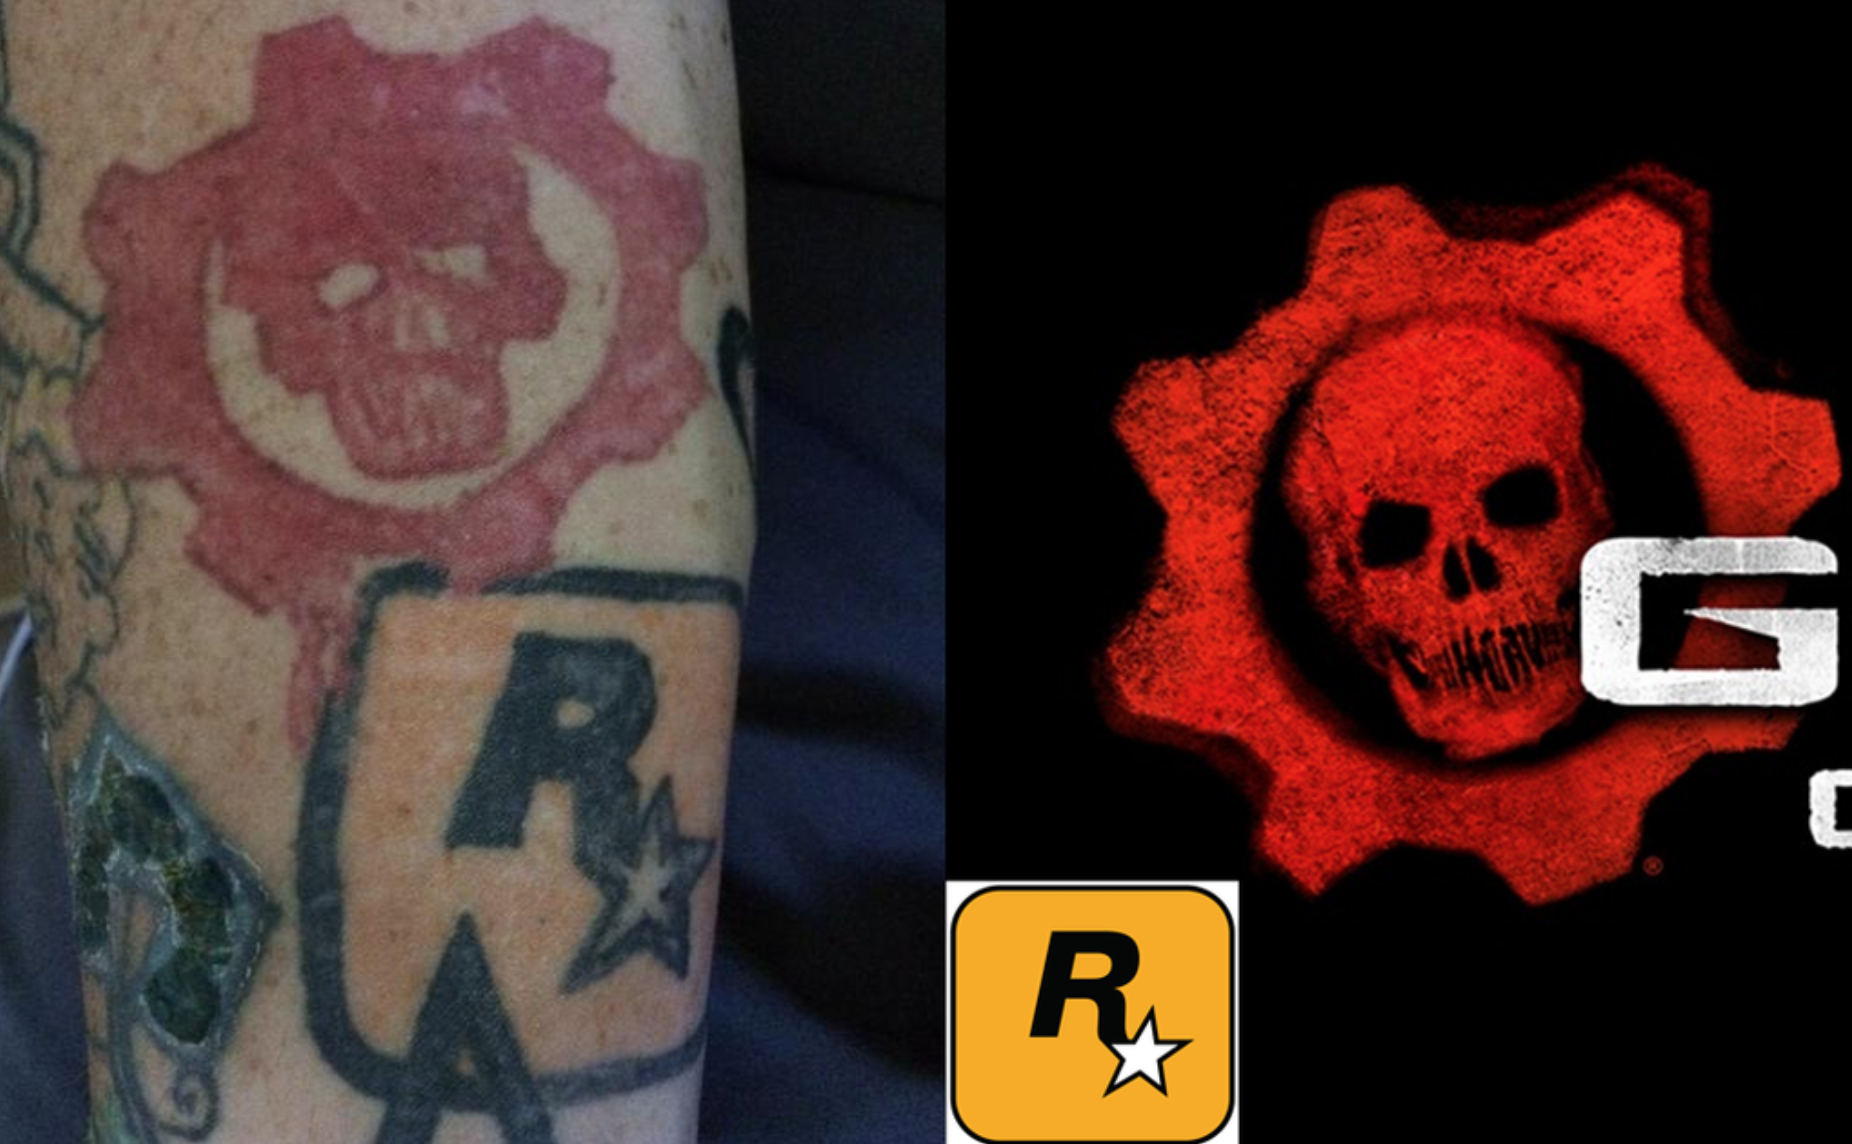 terrible gamer tattoos G R C Rl